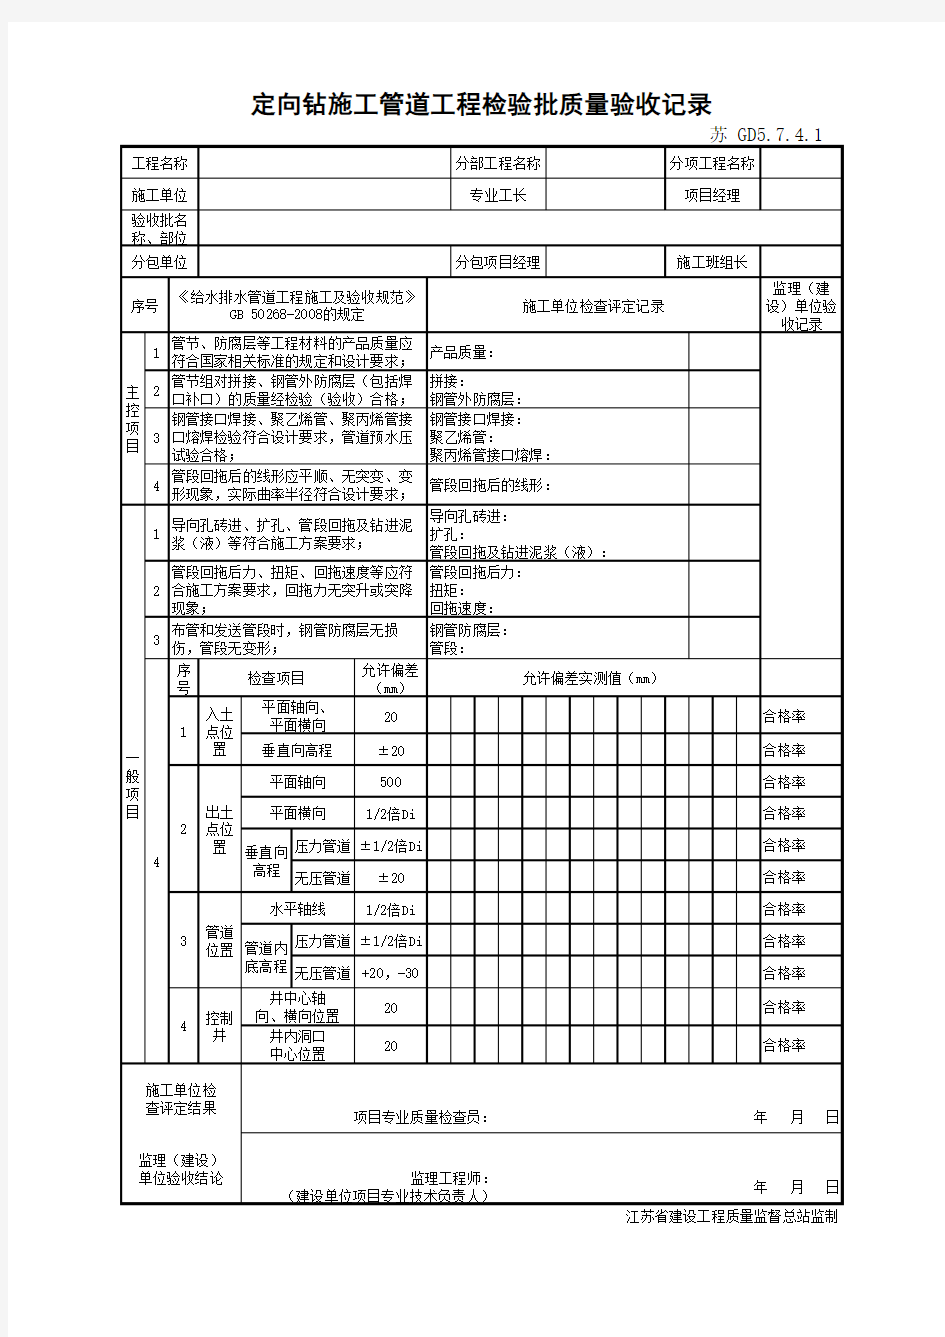 江苏省建设工程质监0190910六版表格文件GD5.7.4.1